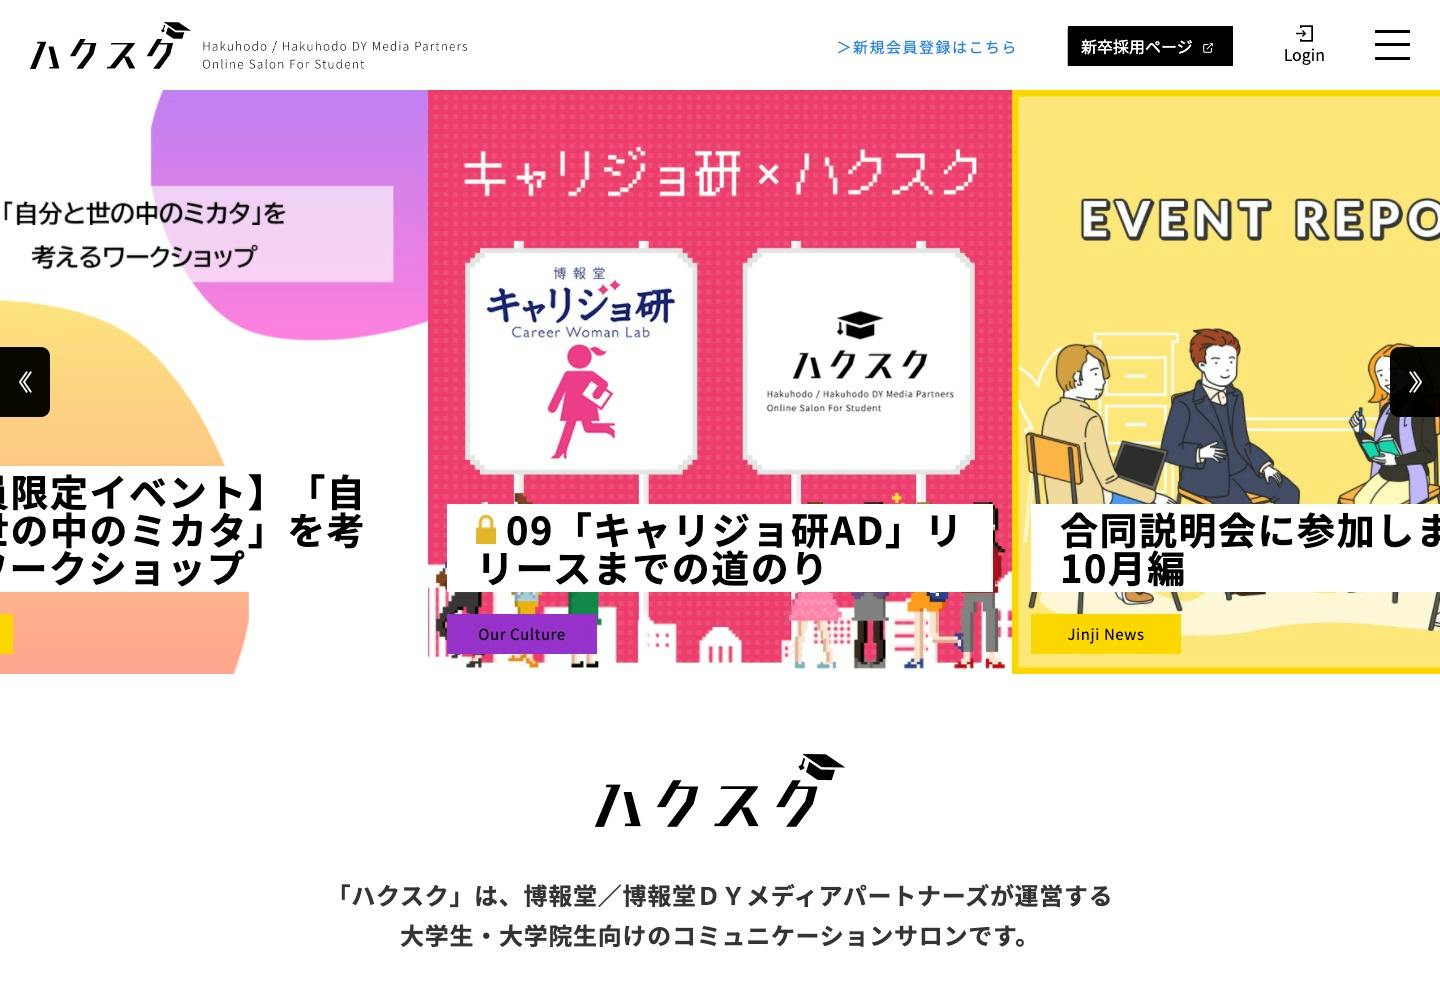 Cover Image for ハクスク – Hakuhodo / Hakuhodo DY Media Partners Online Salon For Student.